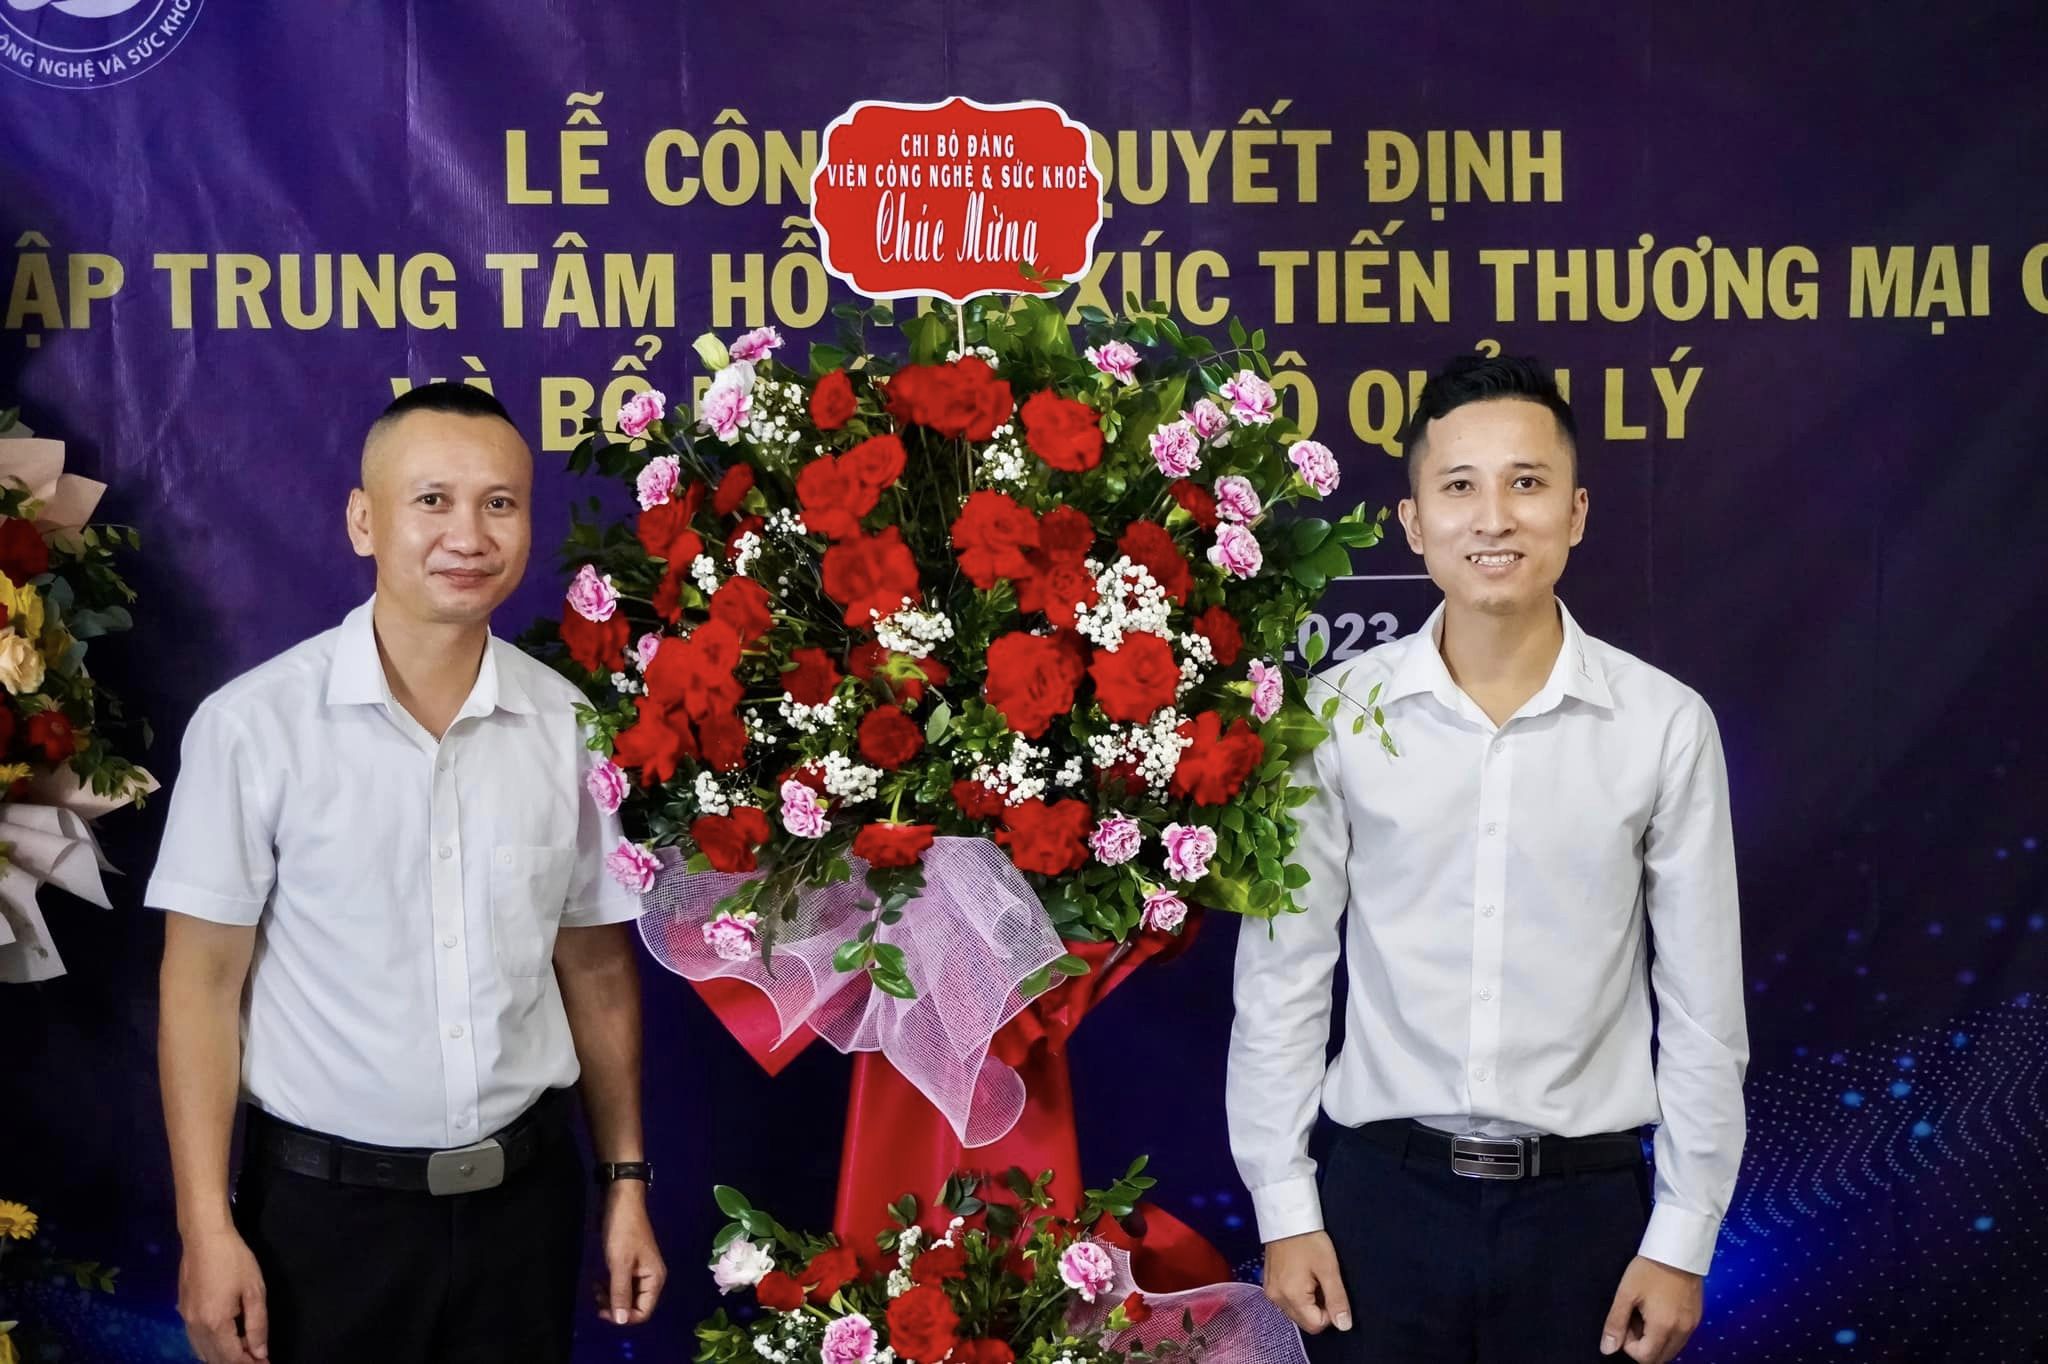 Ông Nguyễn Bá Hiệp được bổ nhiệm làm Giám đốc Trung tâm Hỗ trợ Xúc tiến Thương mại Quốc tế